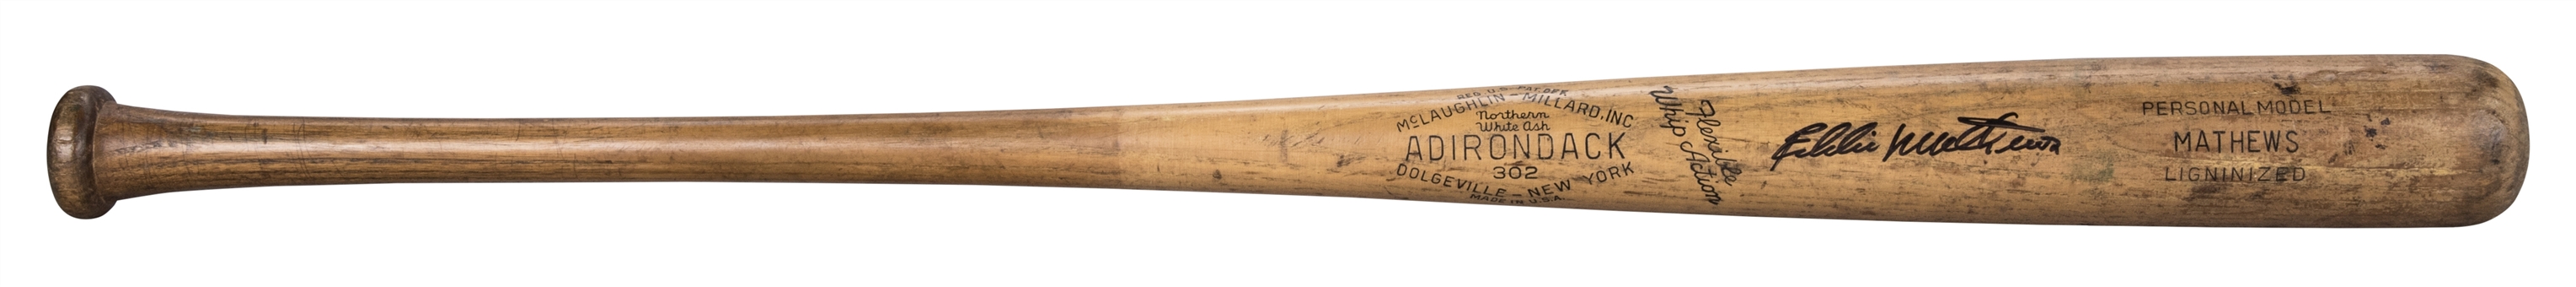 1951-57 Eddie Mathews Game Used and Signed Adirondack 302 Model Bat (PSA/DNA GU 8 & JSA)